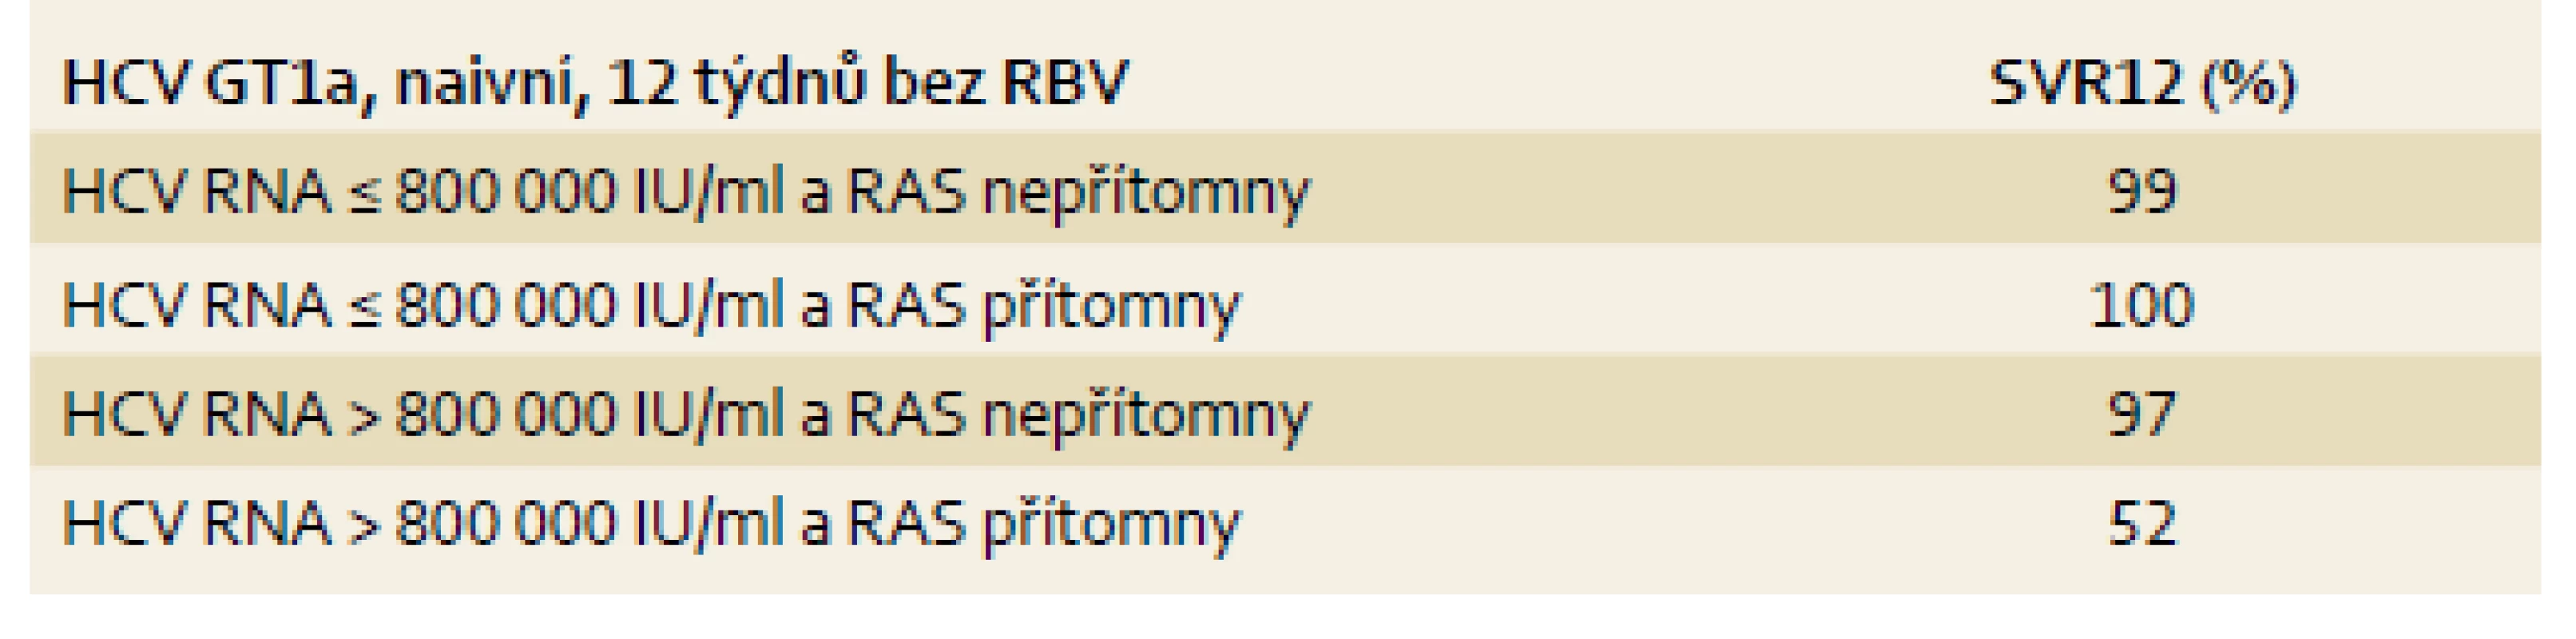 SVR12 u léčebně naivních osob při kombinaci GZR/EBR ve vztahu k RAS a viremii u HCV GT1a.
Tab. 5. SVR12 rates among patients naïve to treatment with GZR/EBR HCV GT1a based on RAS and HCV RNA levels.